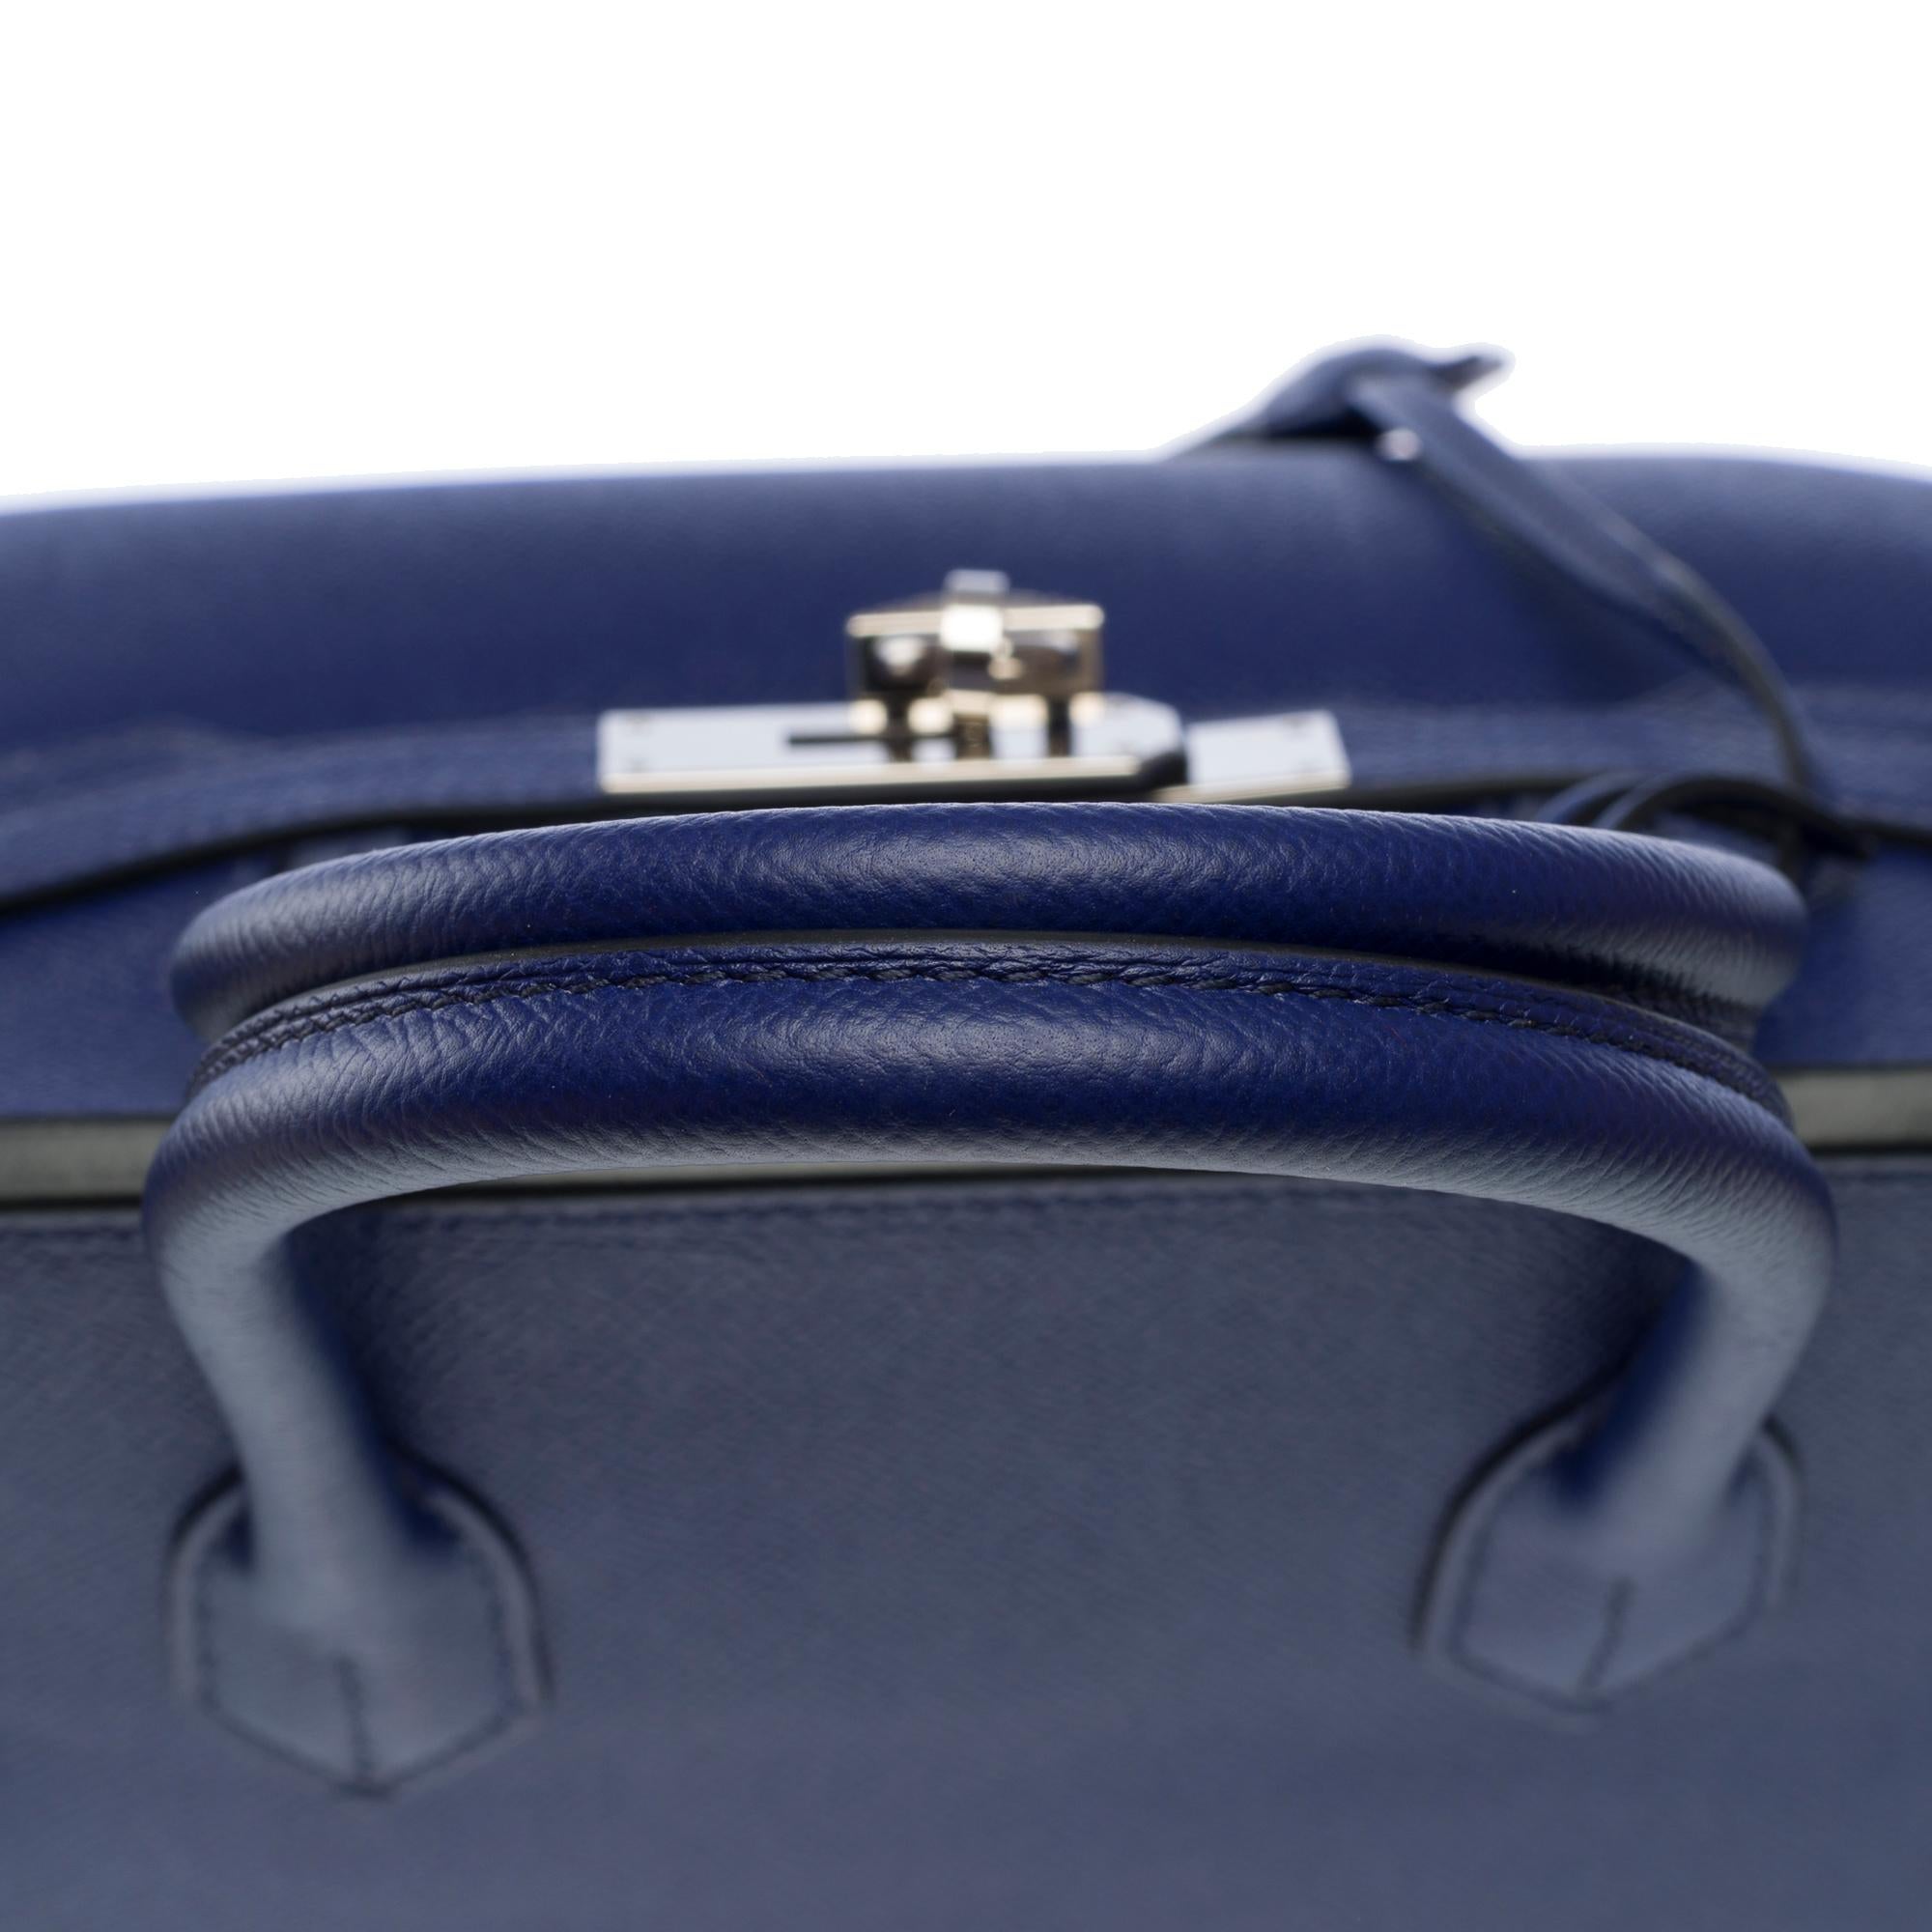 Stunning Hermes Birkin 30 handbag in Blue Sapphire Epsom leather, SHW For Sale 5